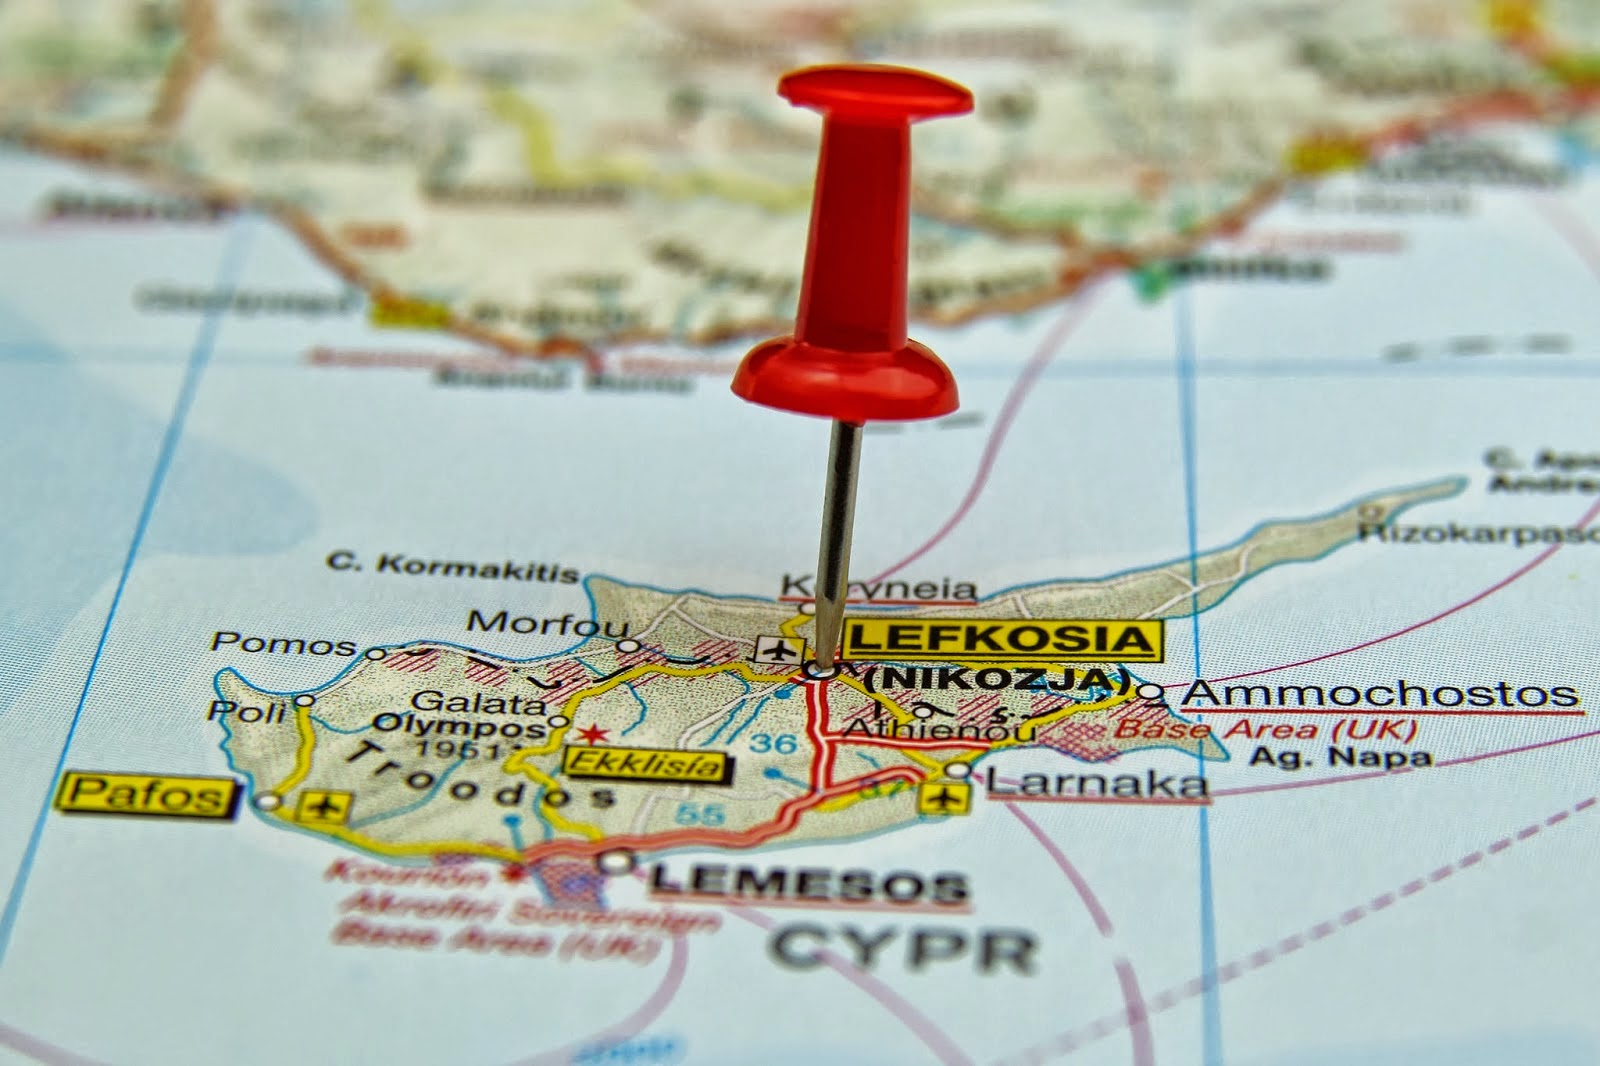 Problema cipriotă are și o componentă nucleară